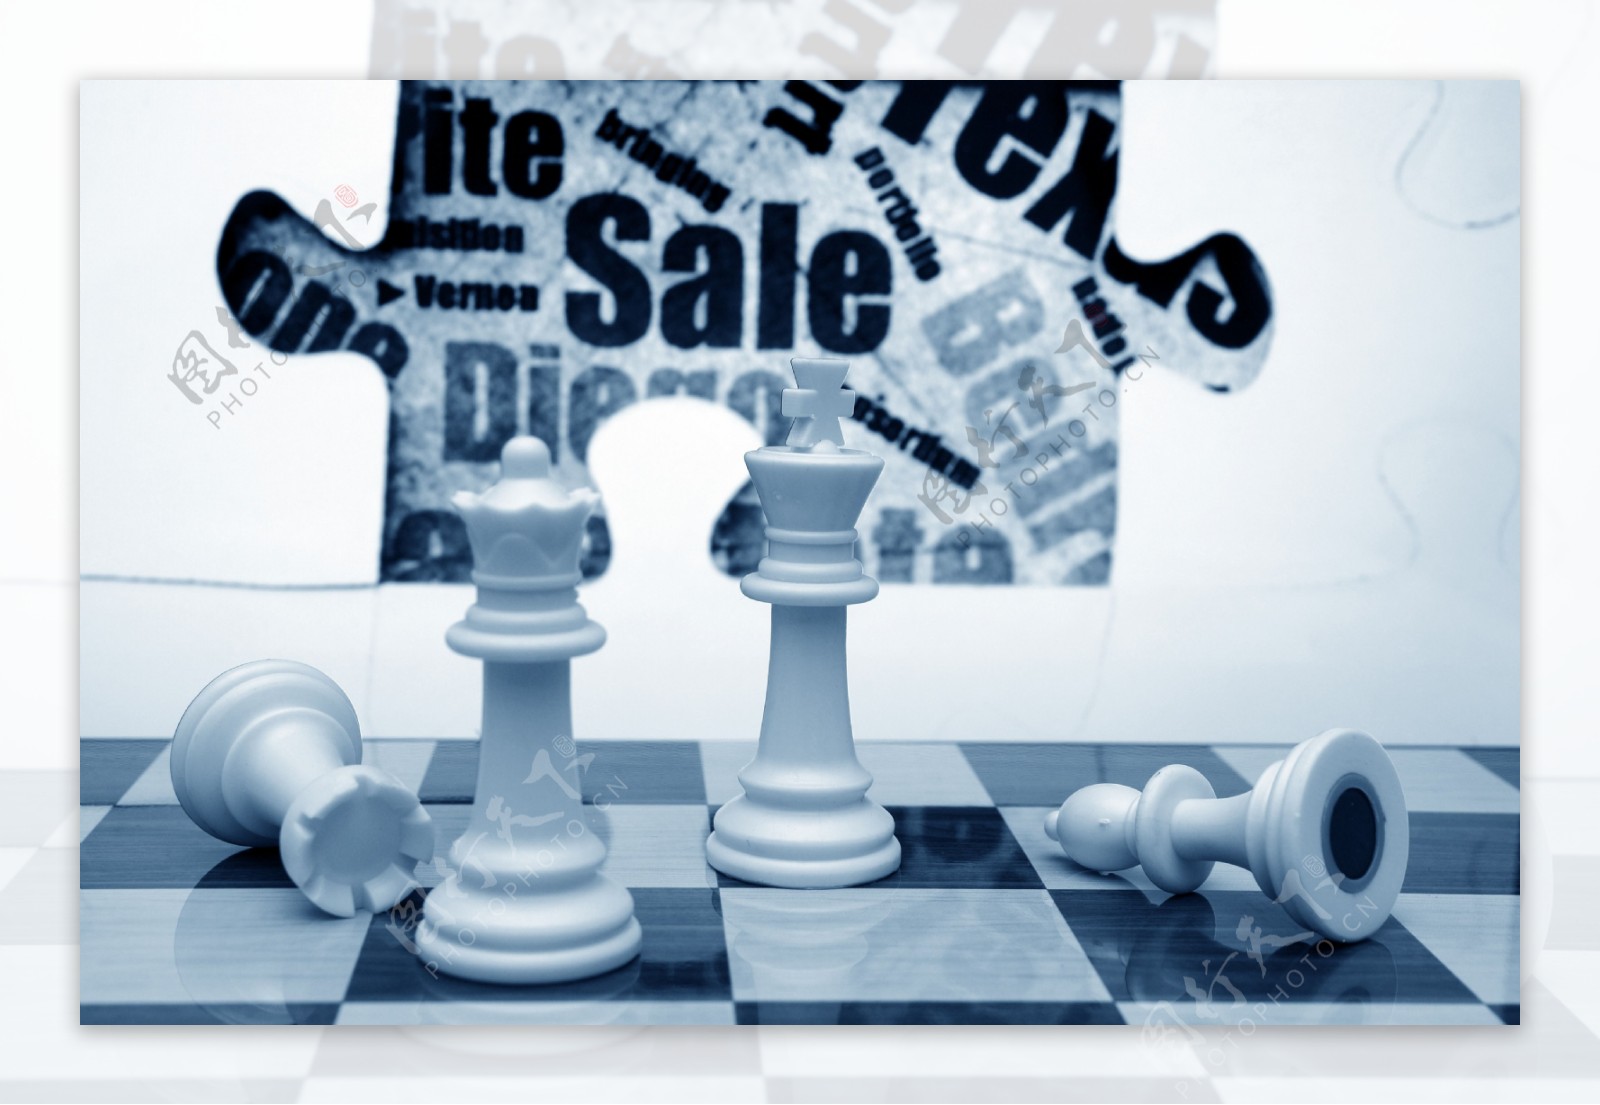 销售和国际象棋的概念